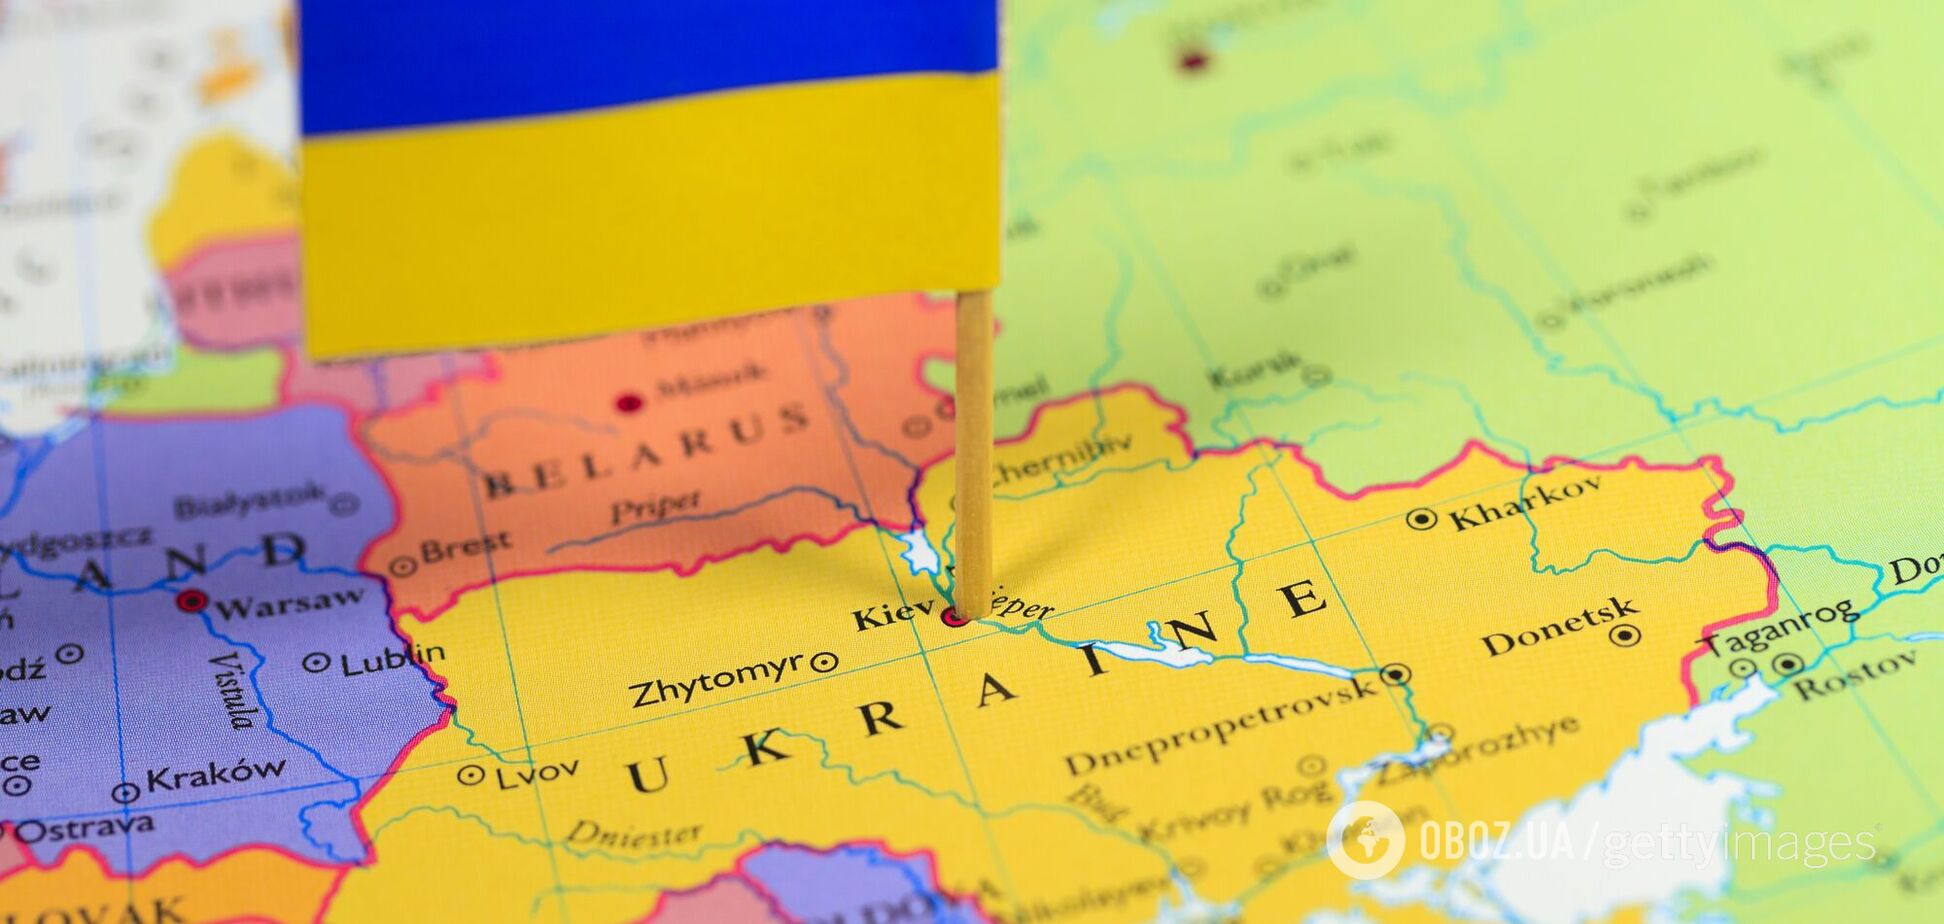 Киев есть и будет столицей Украины-Руси, но к московским изгнанникам это не имеет никакого отношения